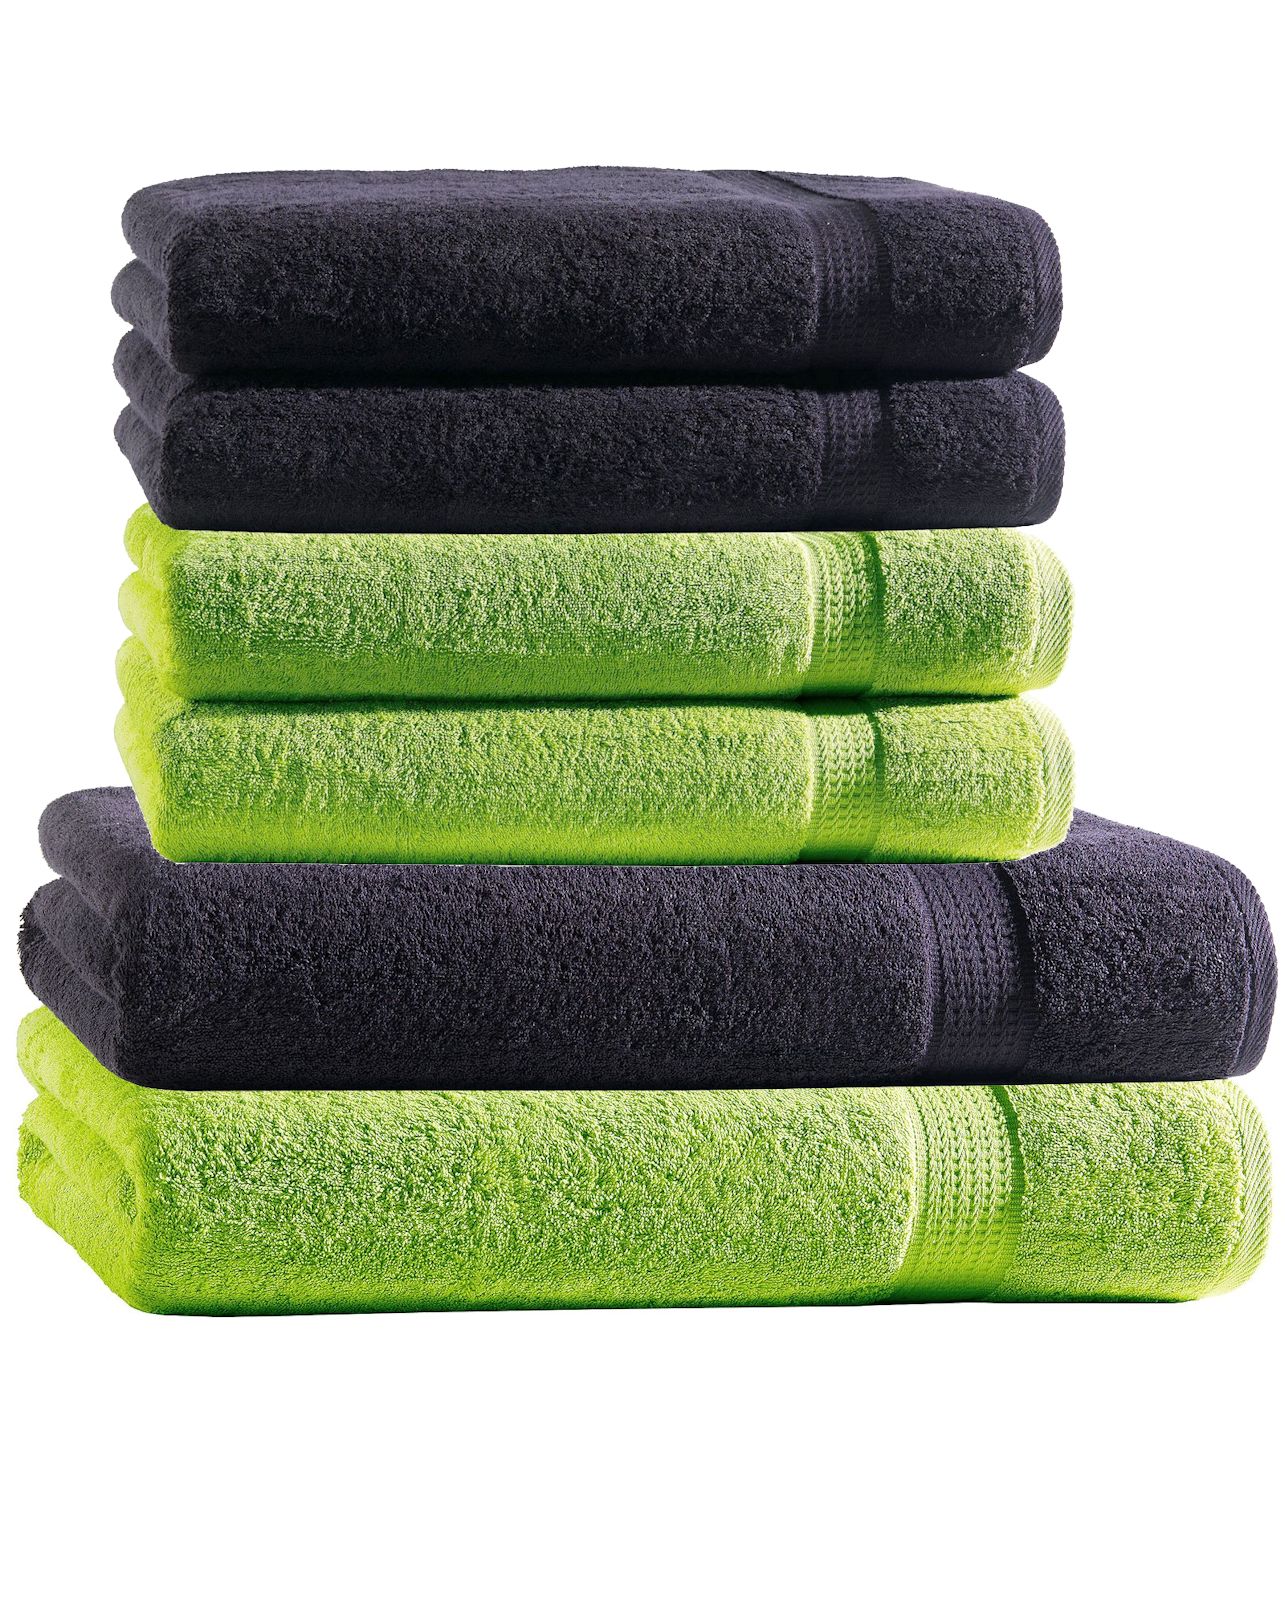 Handtuch Set 6tlg. Mix 2 Farben eBay 4 Duschtücher Handtücher Baumwolle 2 | Duschtuch